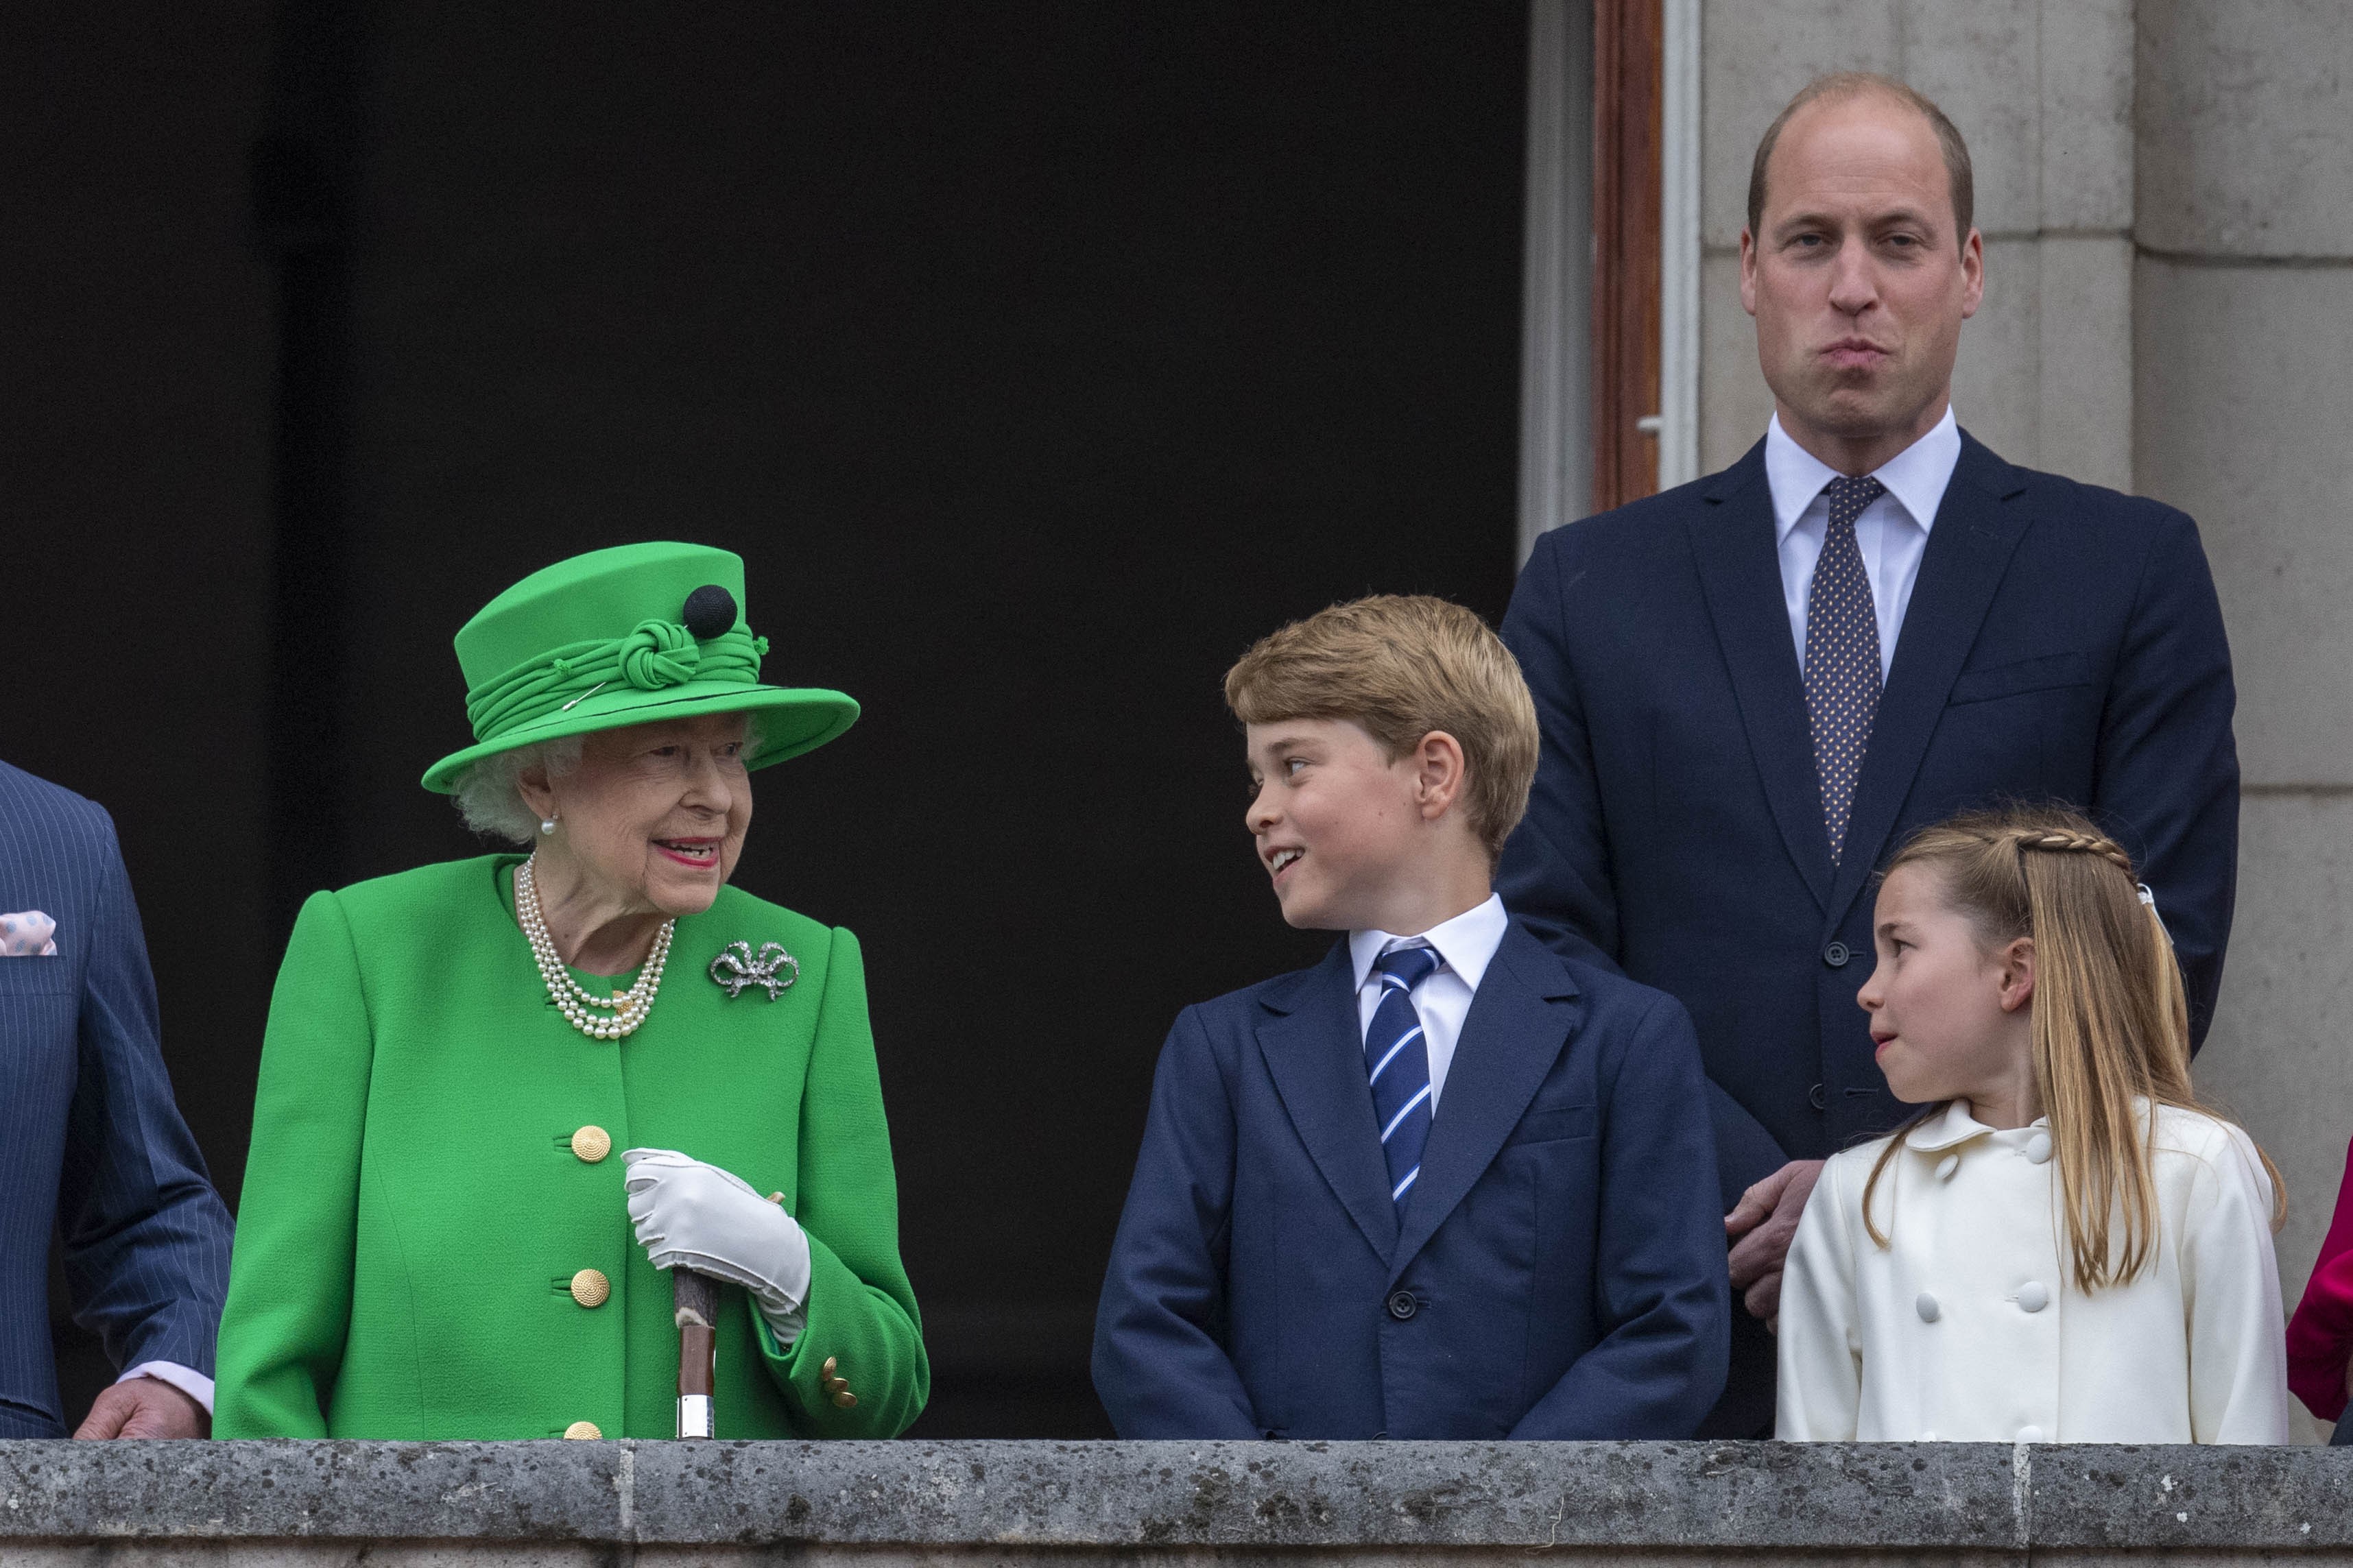 A Rainha Elizabeth II na companhia do Príncipe William e de dois dos bisnetos, Príncipe George e Princesa Charlotte (Foto: Getty Images)